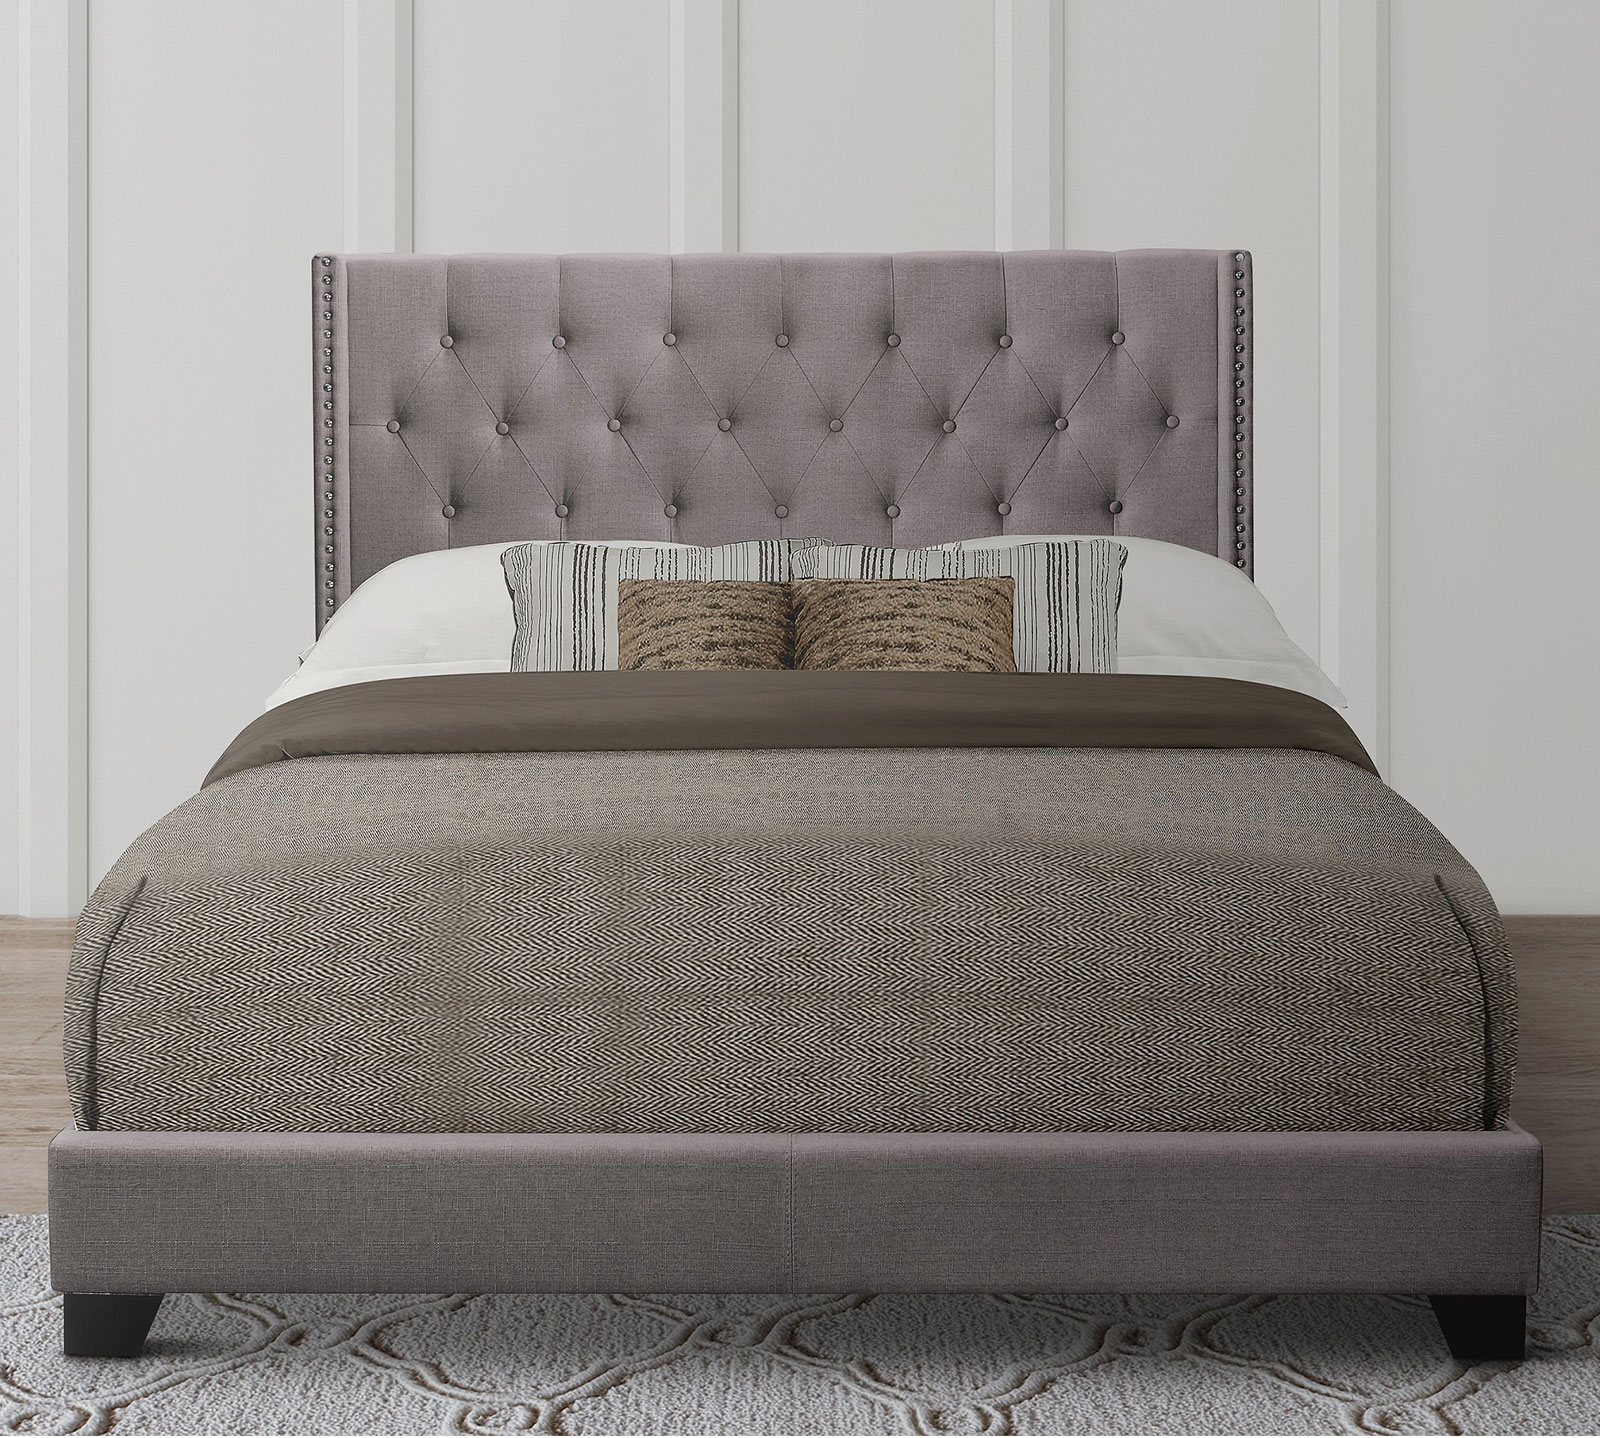 Homelegance Upholstered Bed Set | King | Avery Bed Frame & Headboard | Gray